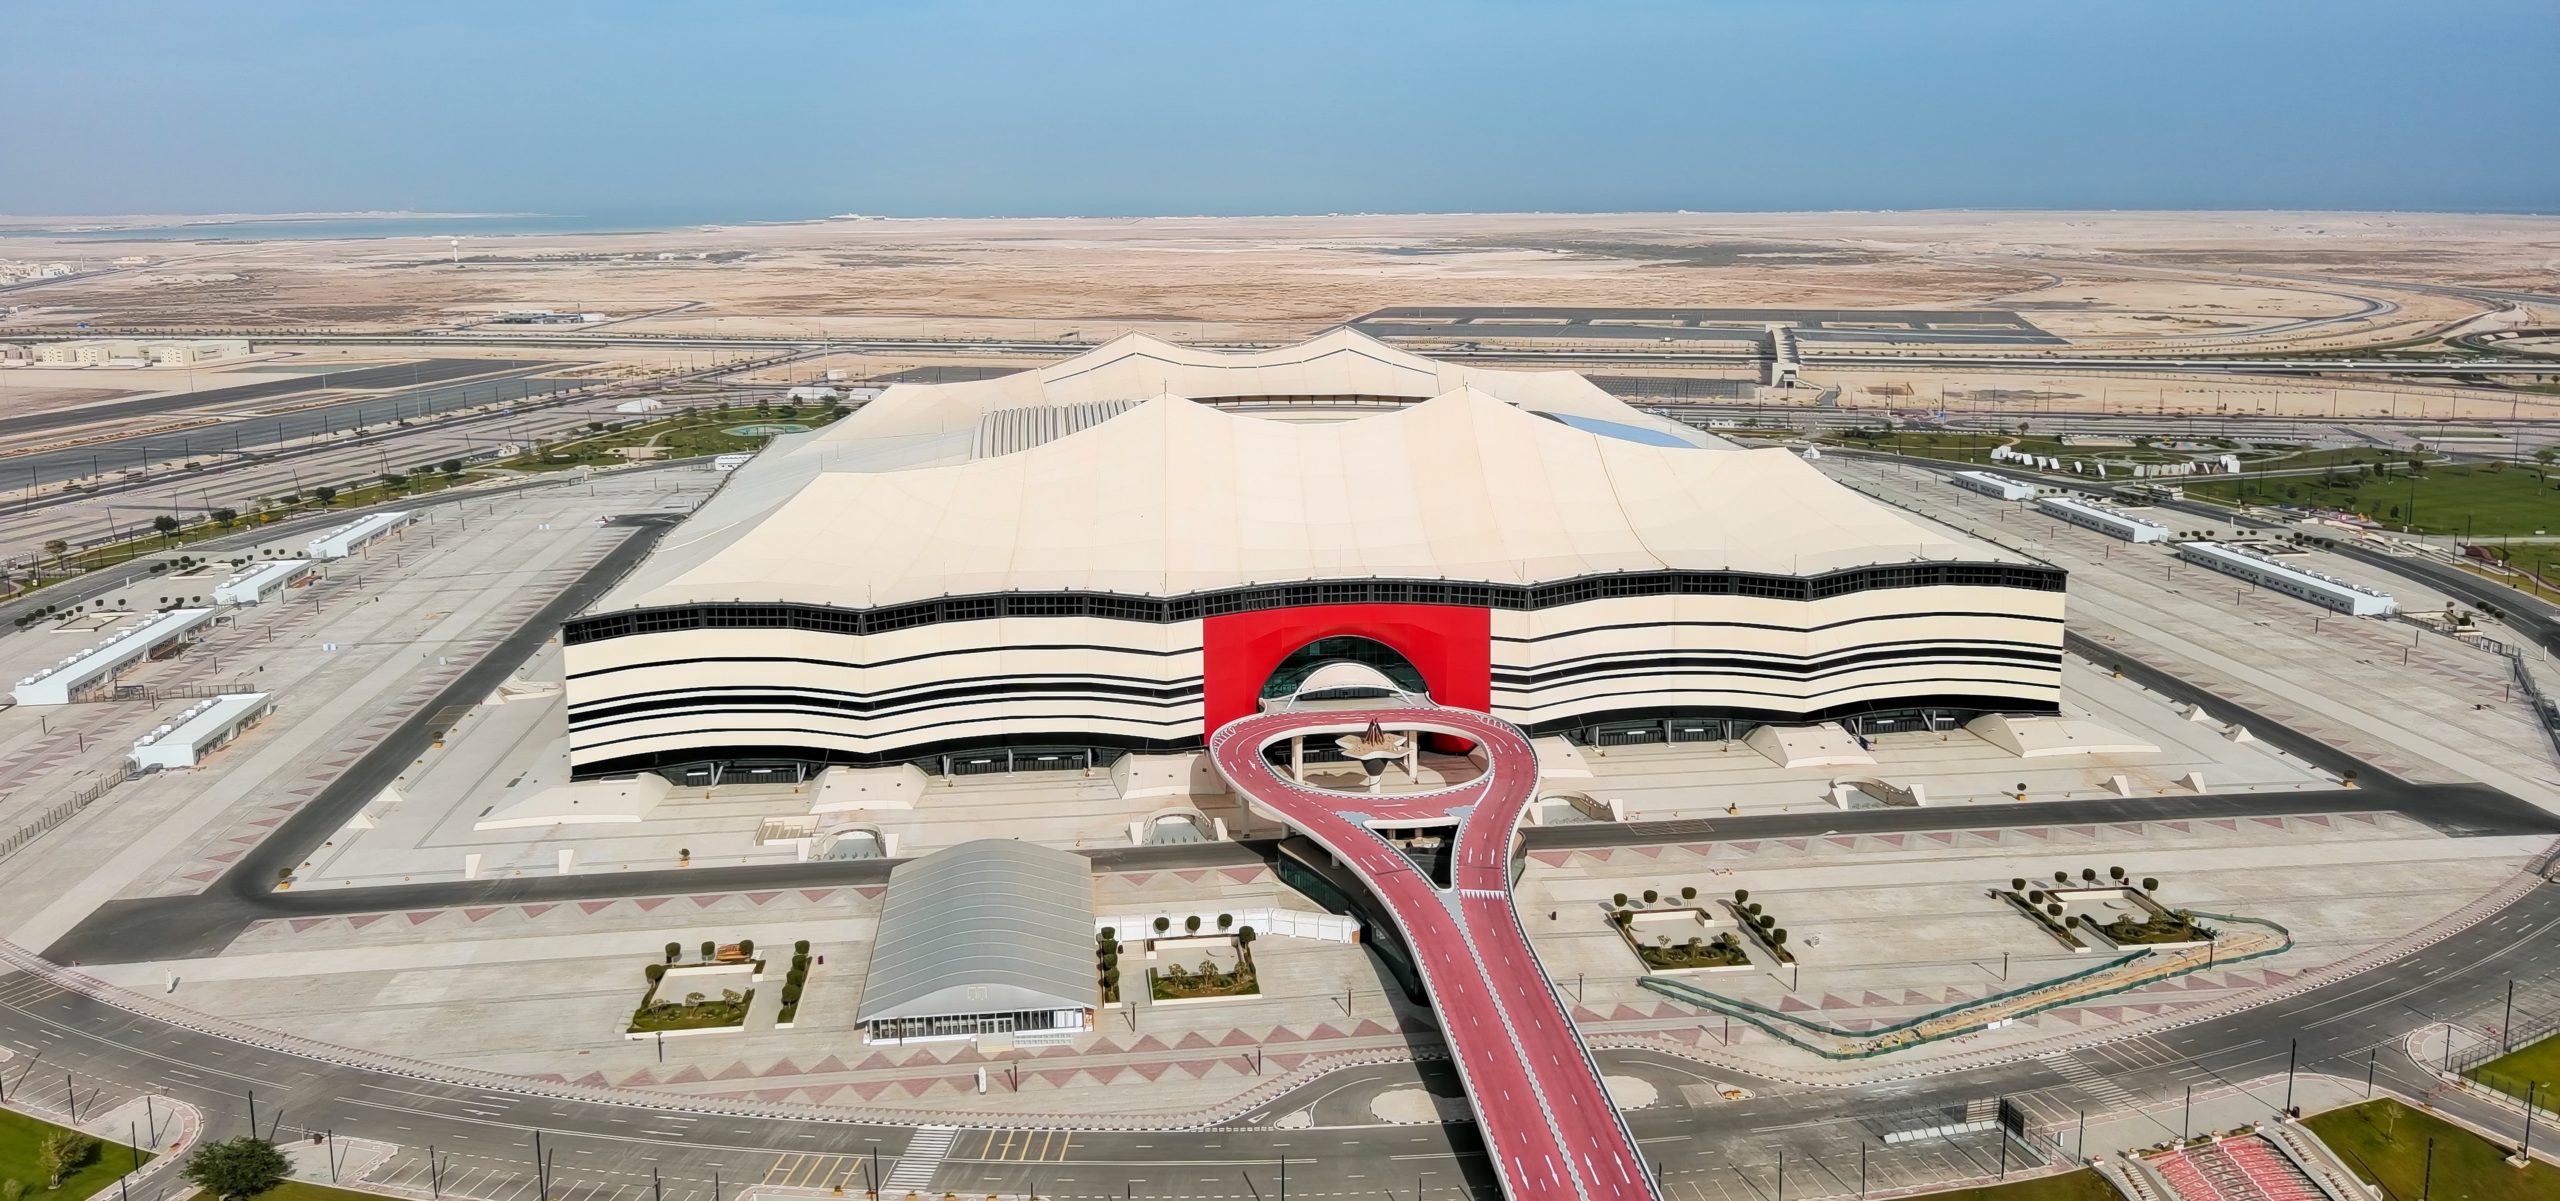 ملعب البيت في قطر